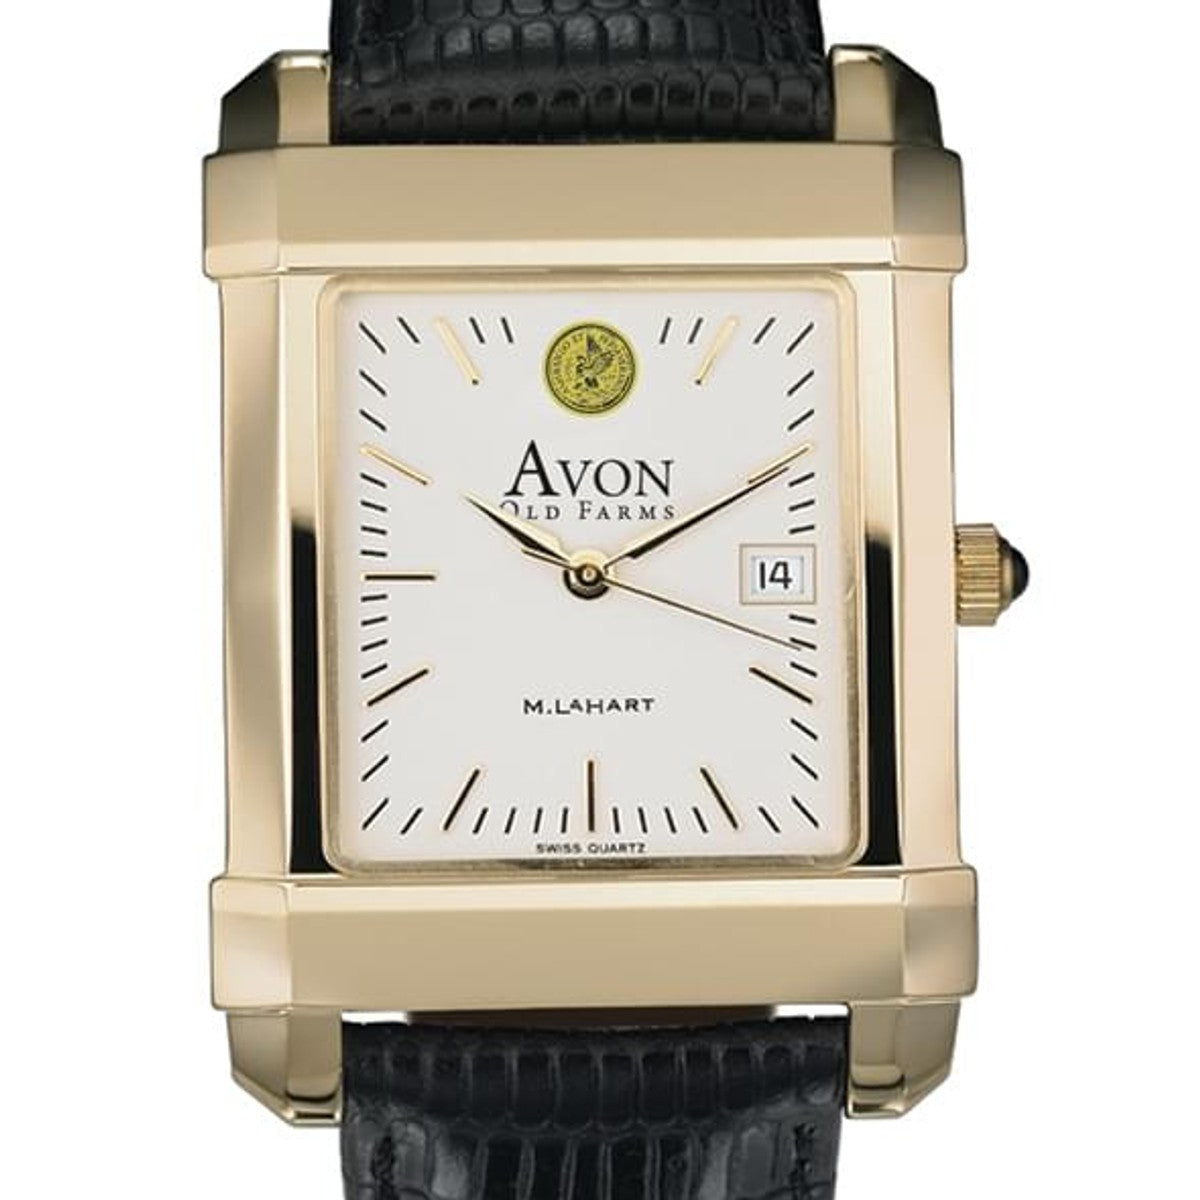 Avon smart watch | Junk Mail